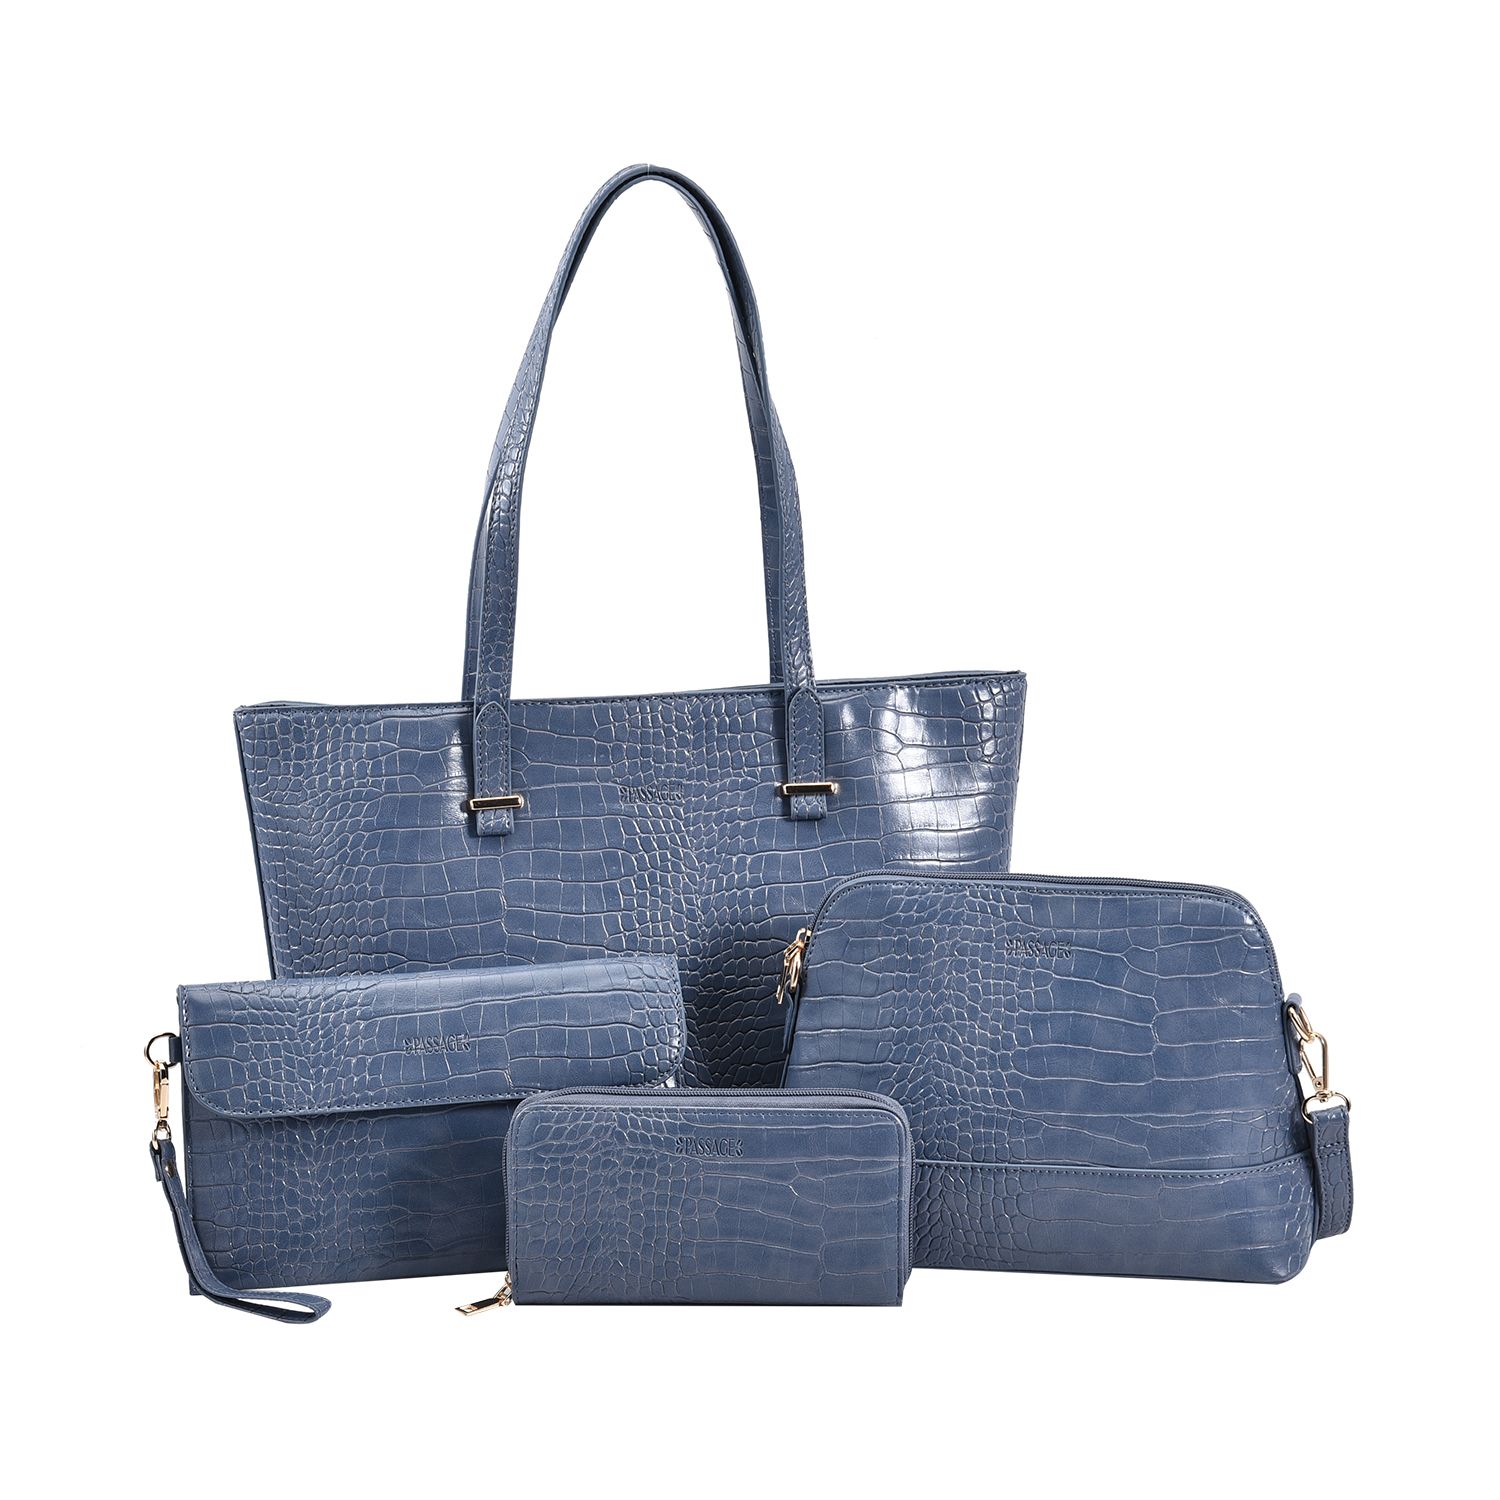 Passage - 4er-Set Handtaschen mit Krokodilprägung; enthält Schultertasche,  Cross Body Bag, Clutch Bag und Portemonnaie, blau